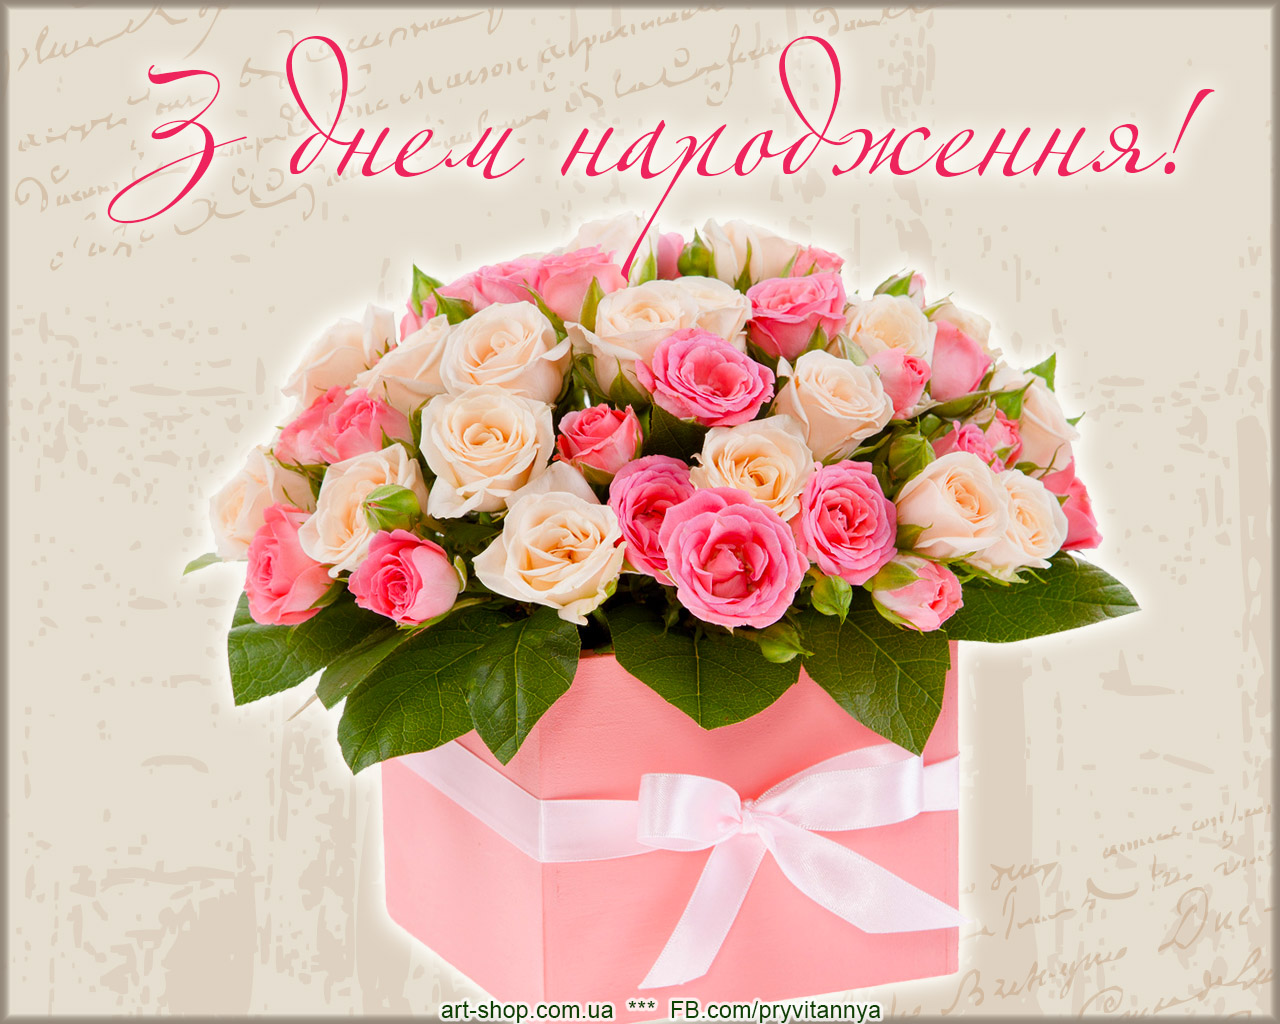 Поздравить с днем рождения на украинском. З днем народження. Вітаю з днем народження. Листівки з днем народження. Привітання з днем народженнн.